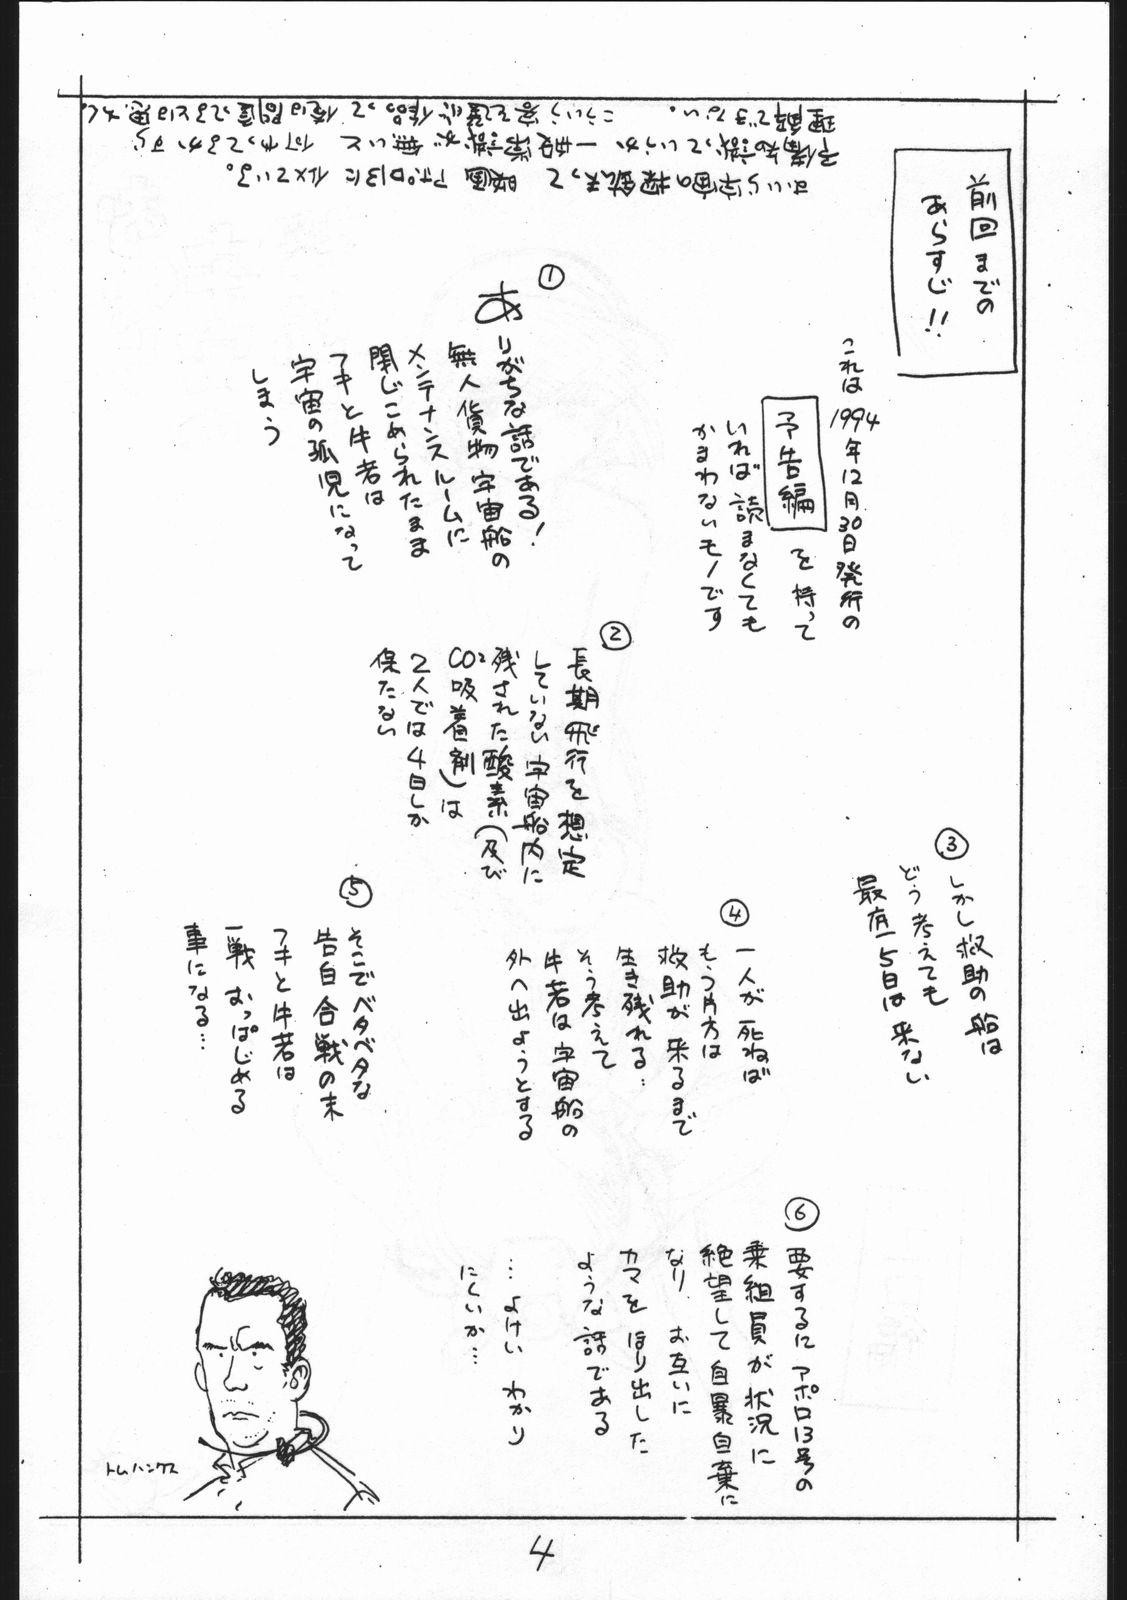 Submissive Enpitsu Egaki H Manga Vol. 3 - Yamato takeru Studs - Page 4